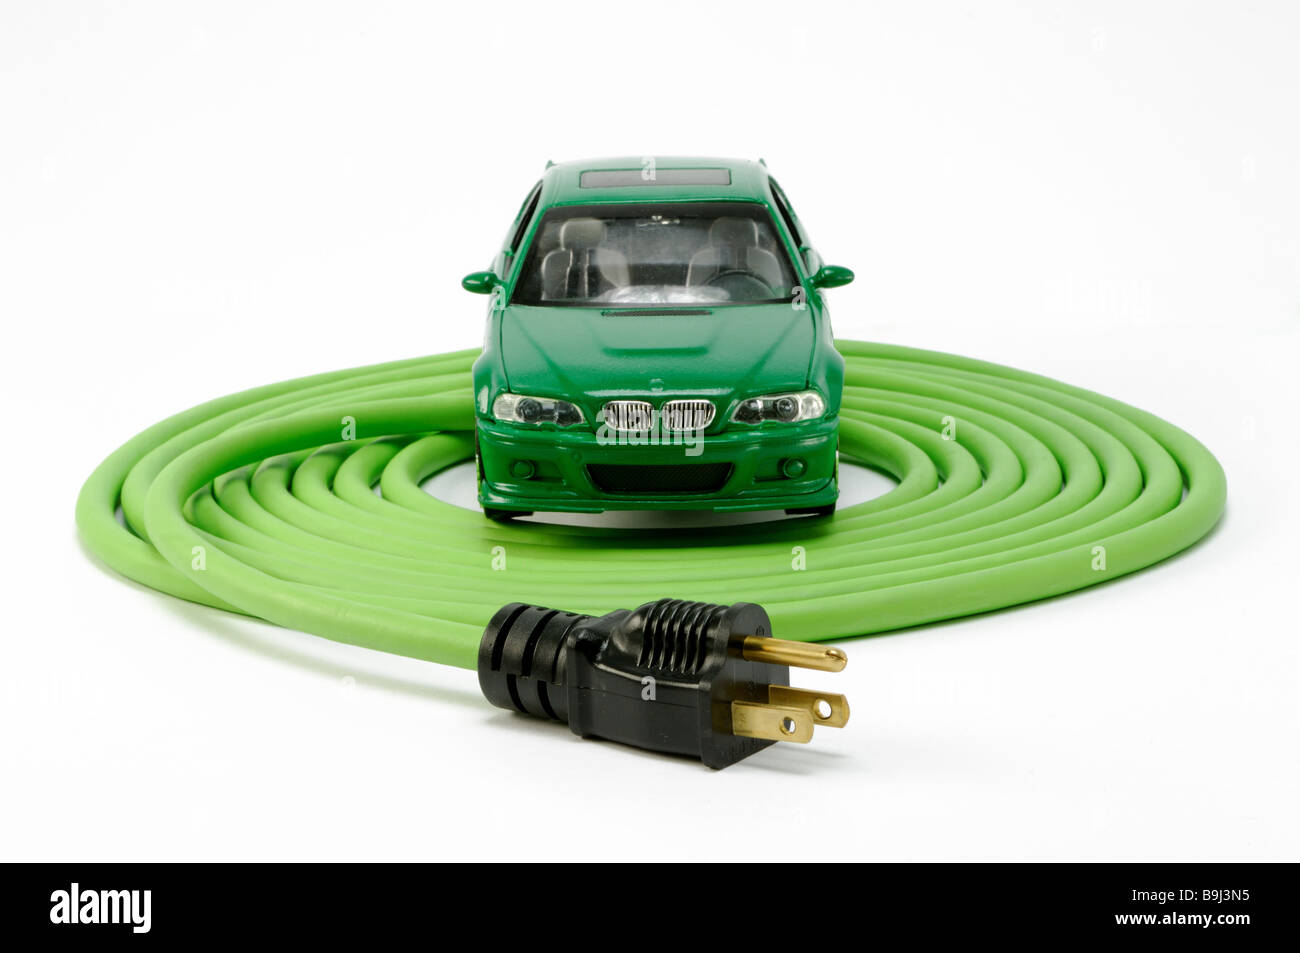 Un verde automobile automobile su un verde avvolto a spirale prolunga elettrica cavo di alimentazione con una spina Foto Stock